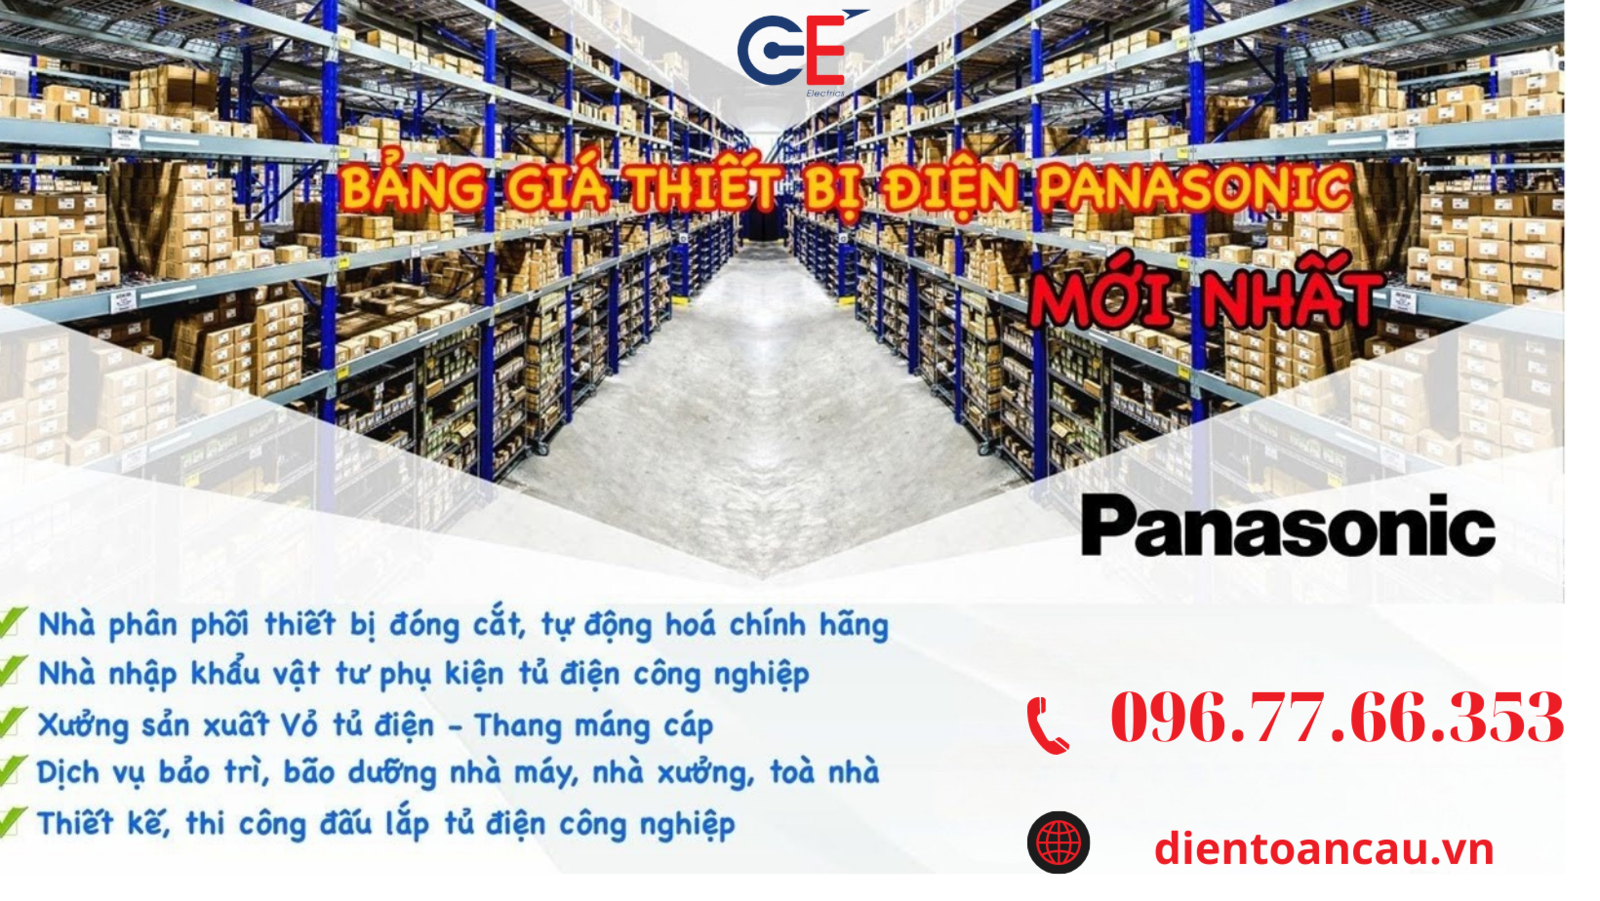 Đại lí GE phân phối thiết bị điện Panasonic